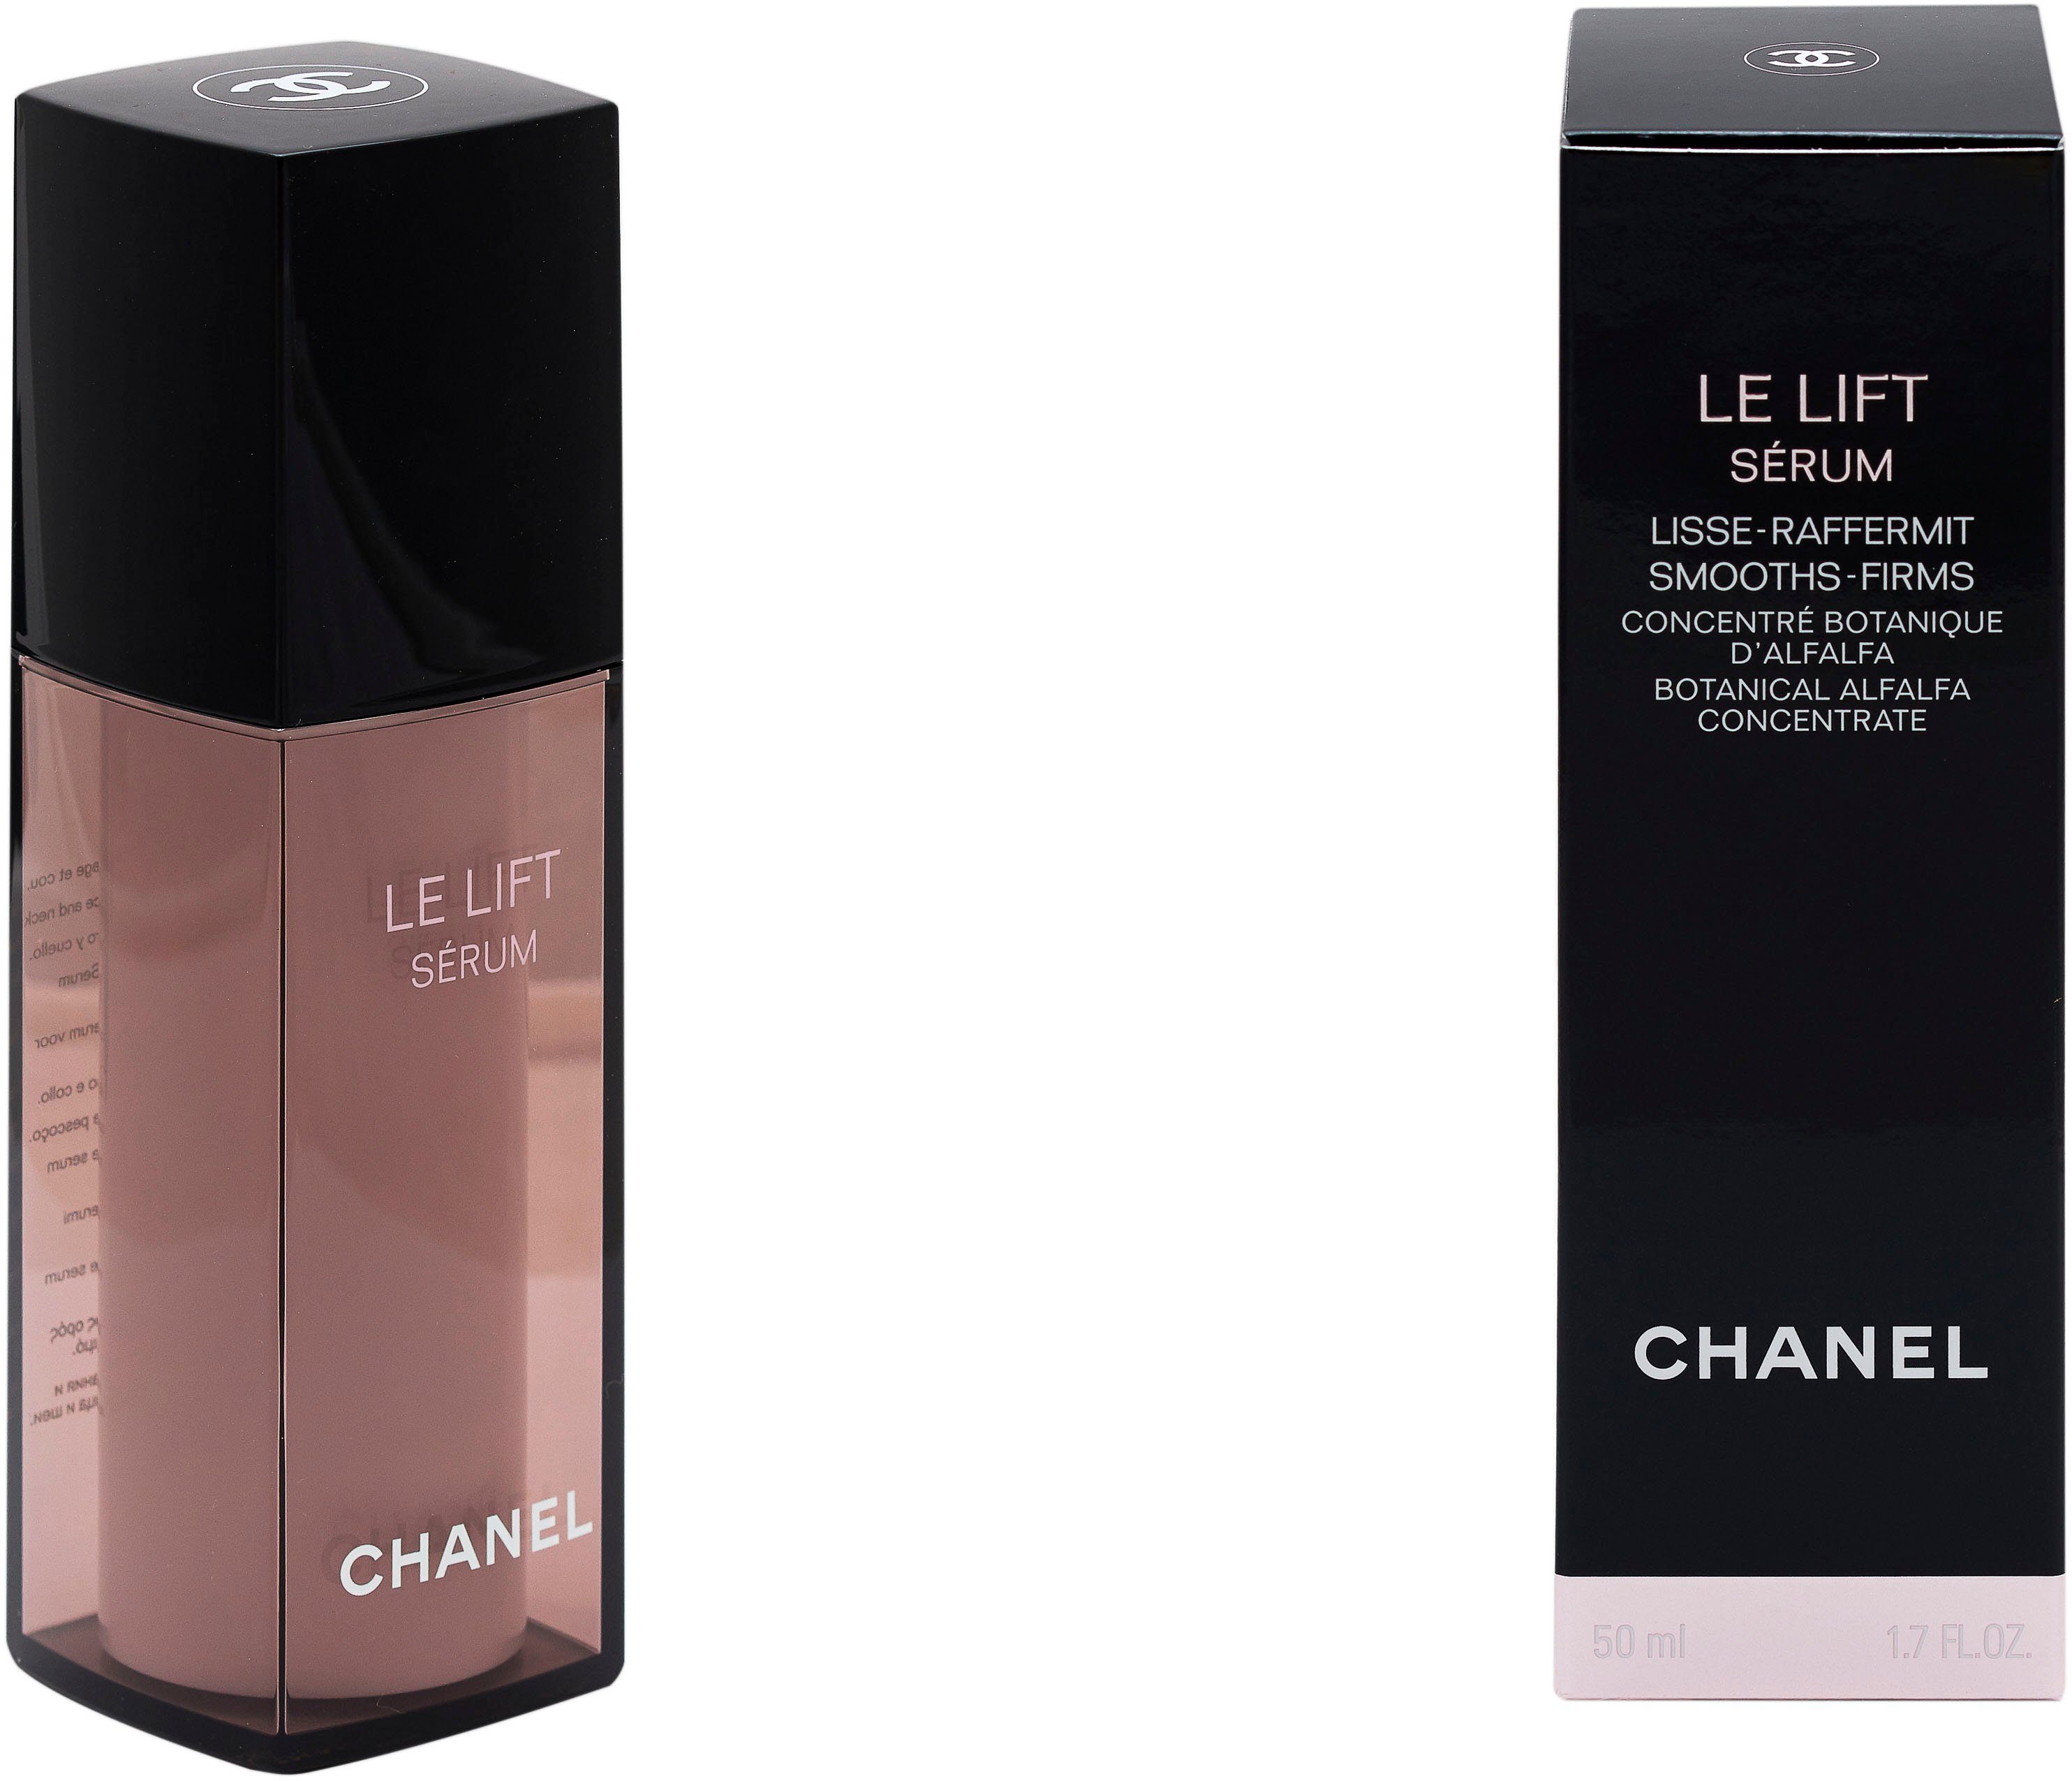 Chanel Lisse-Raffermint Lift CHANEL Gesichtsserum Le Serum